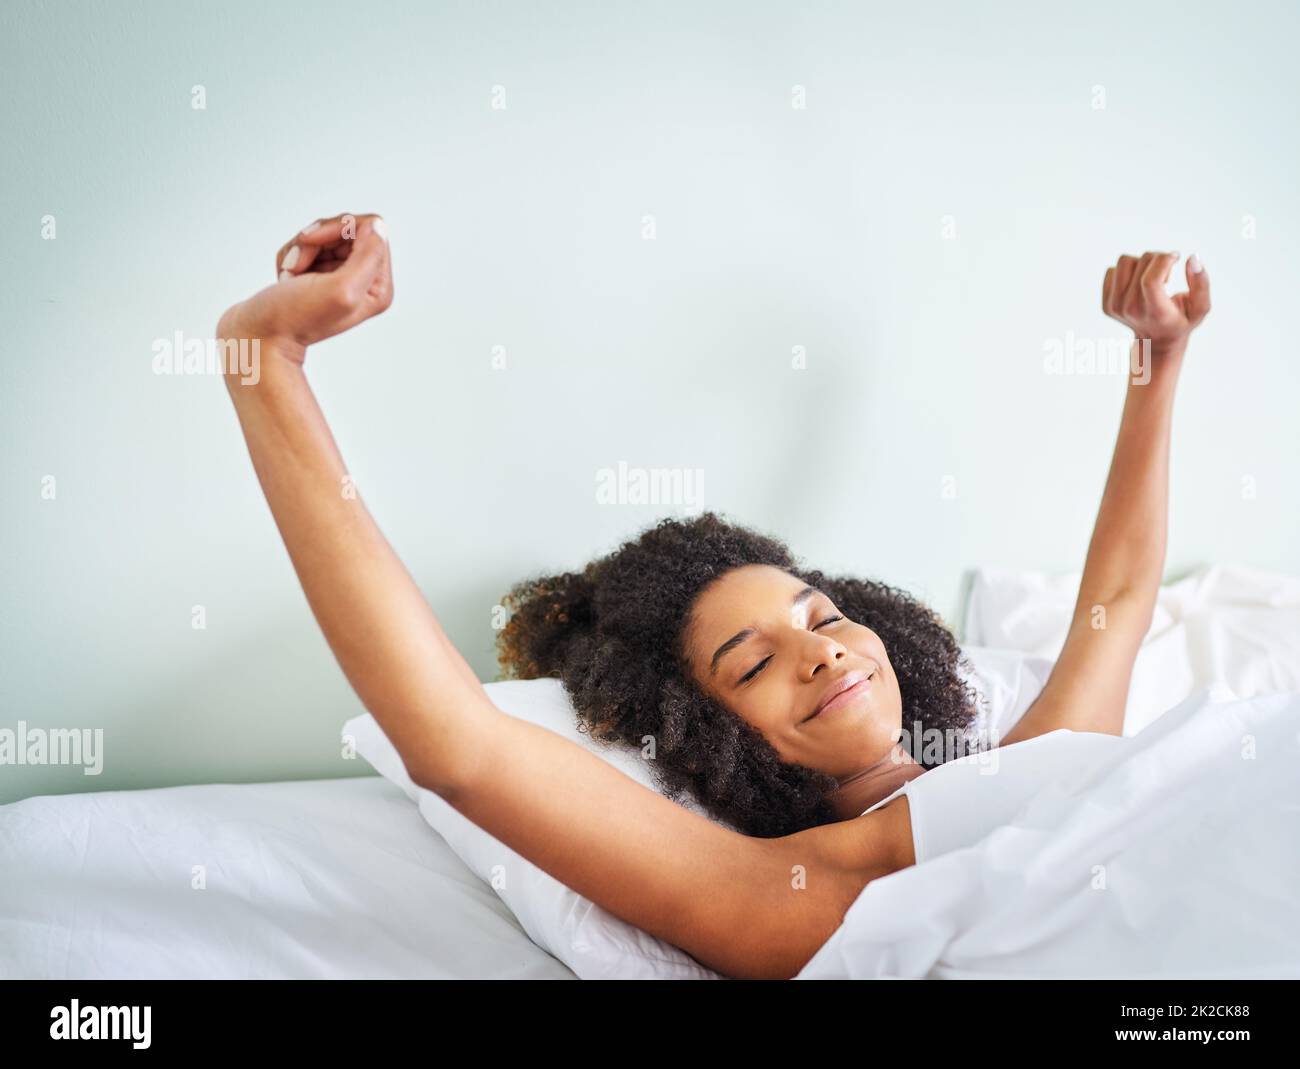 Dormire nel letto immagini e fotografie stock ad alta risoluzione - Alamy